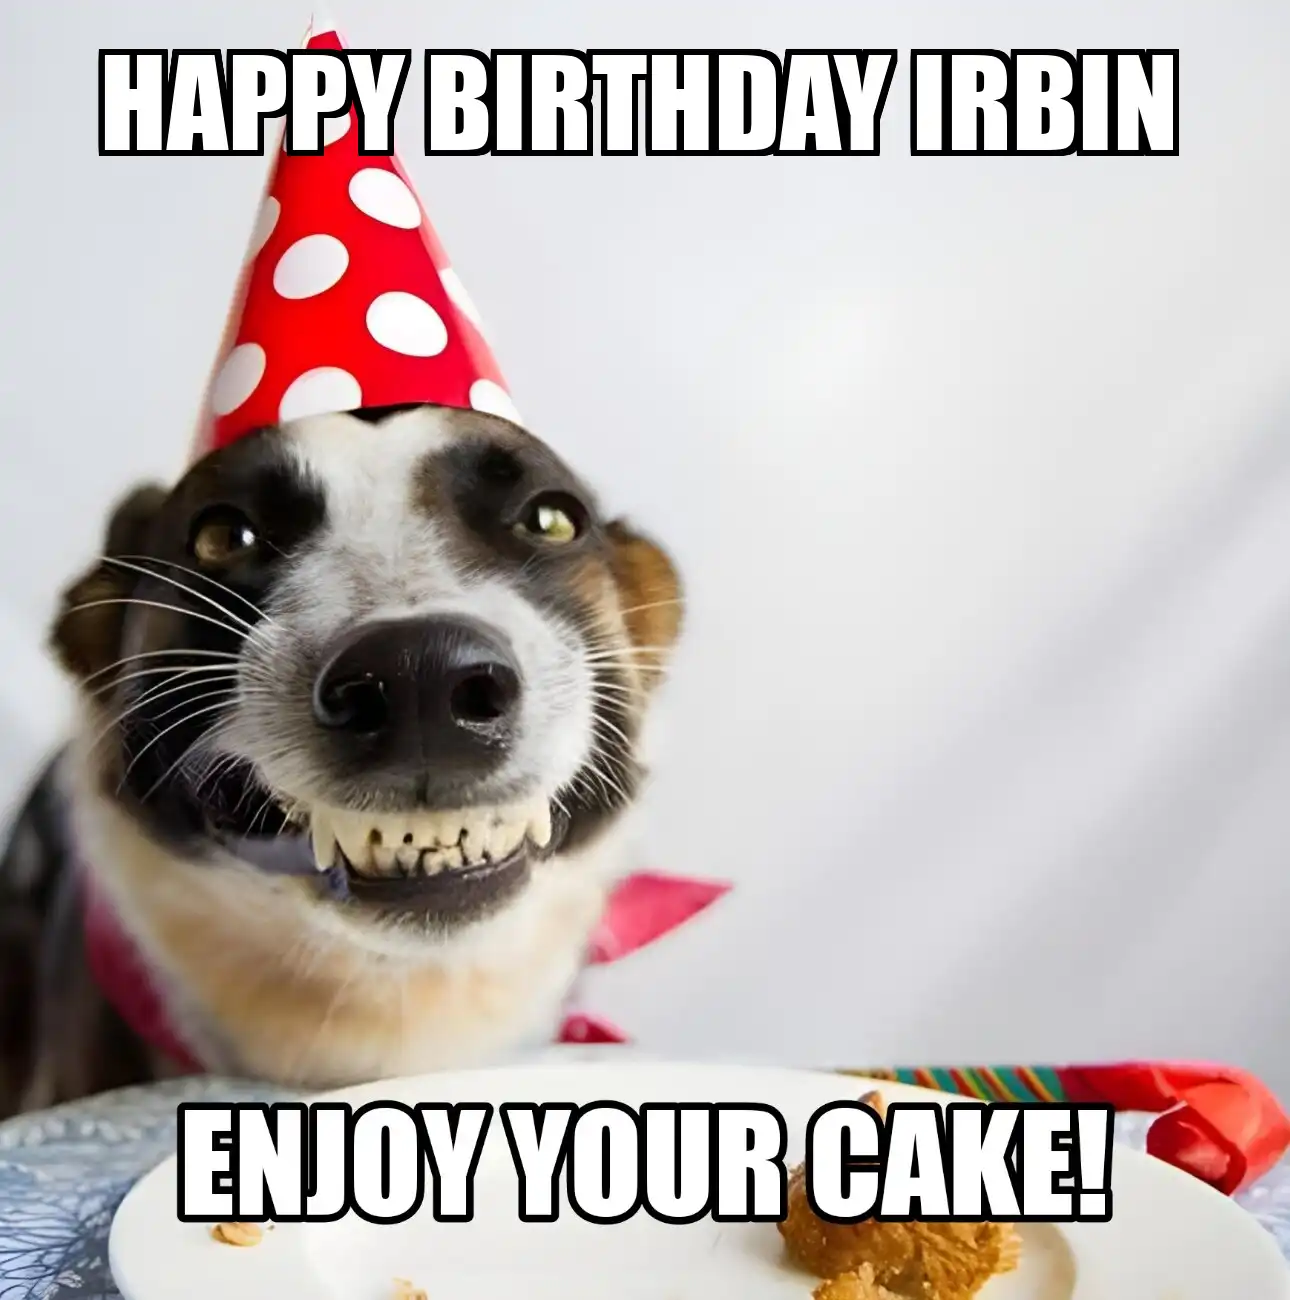 Happy Birthday Irbin Enjoy Your Cake Dog Meme